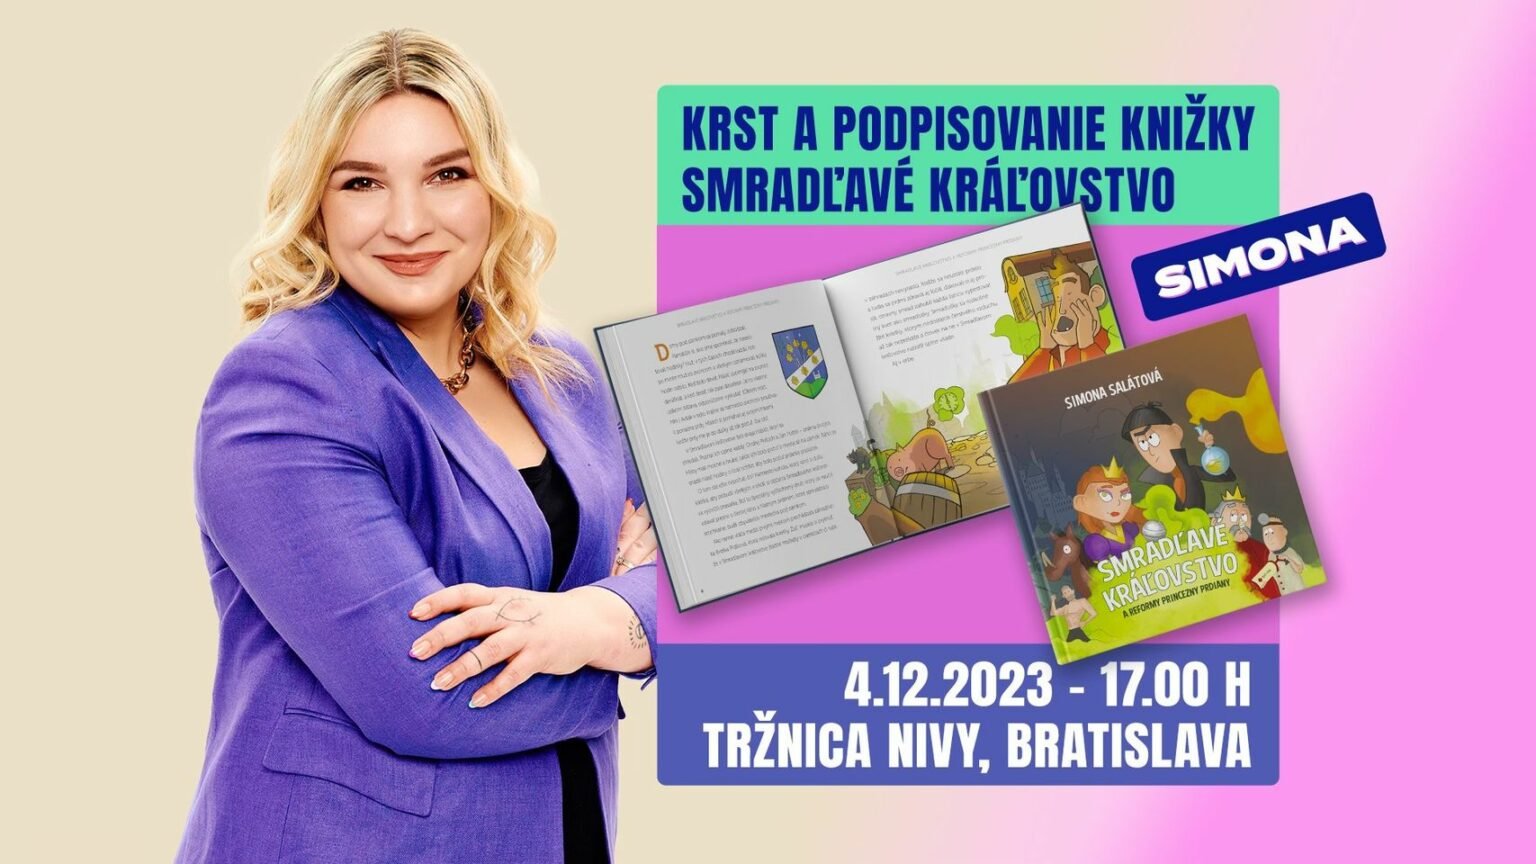 Simona Salátová - Smradľavé kráľovstvo a reformy princezny Prdiany / krst knihy